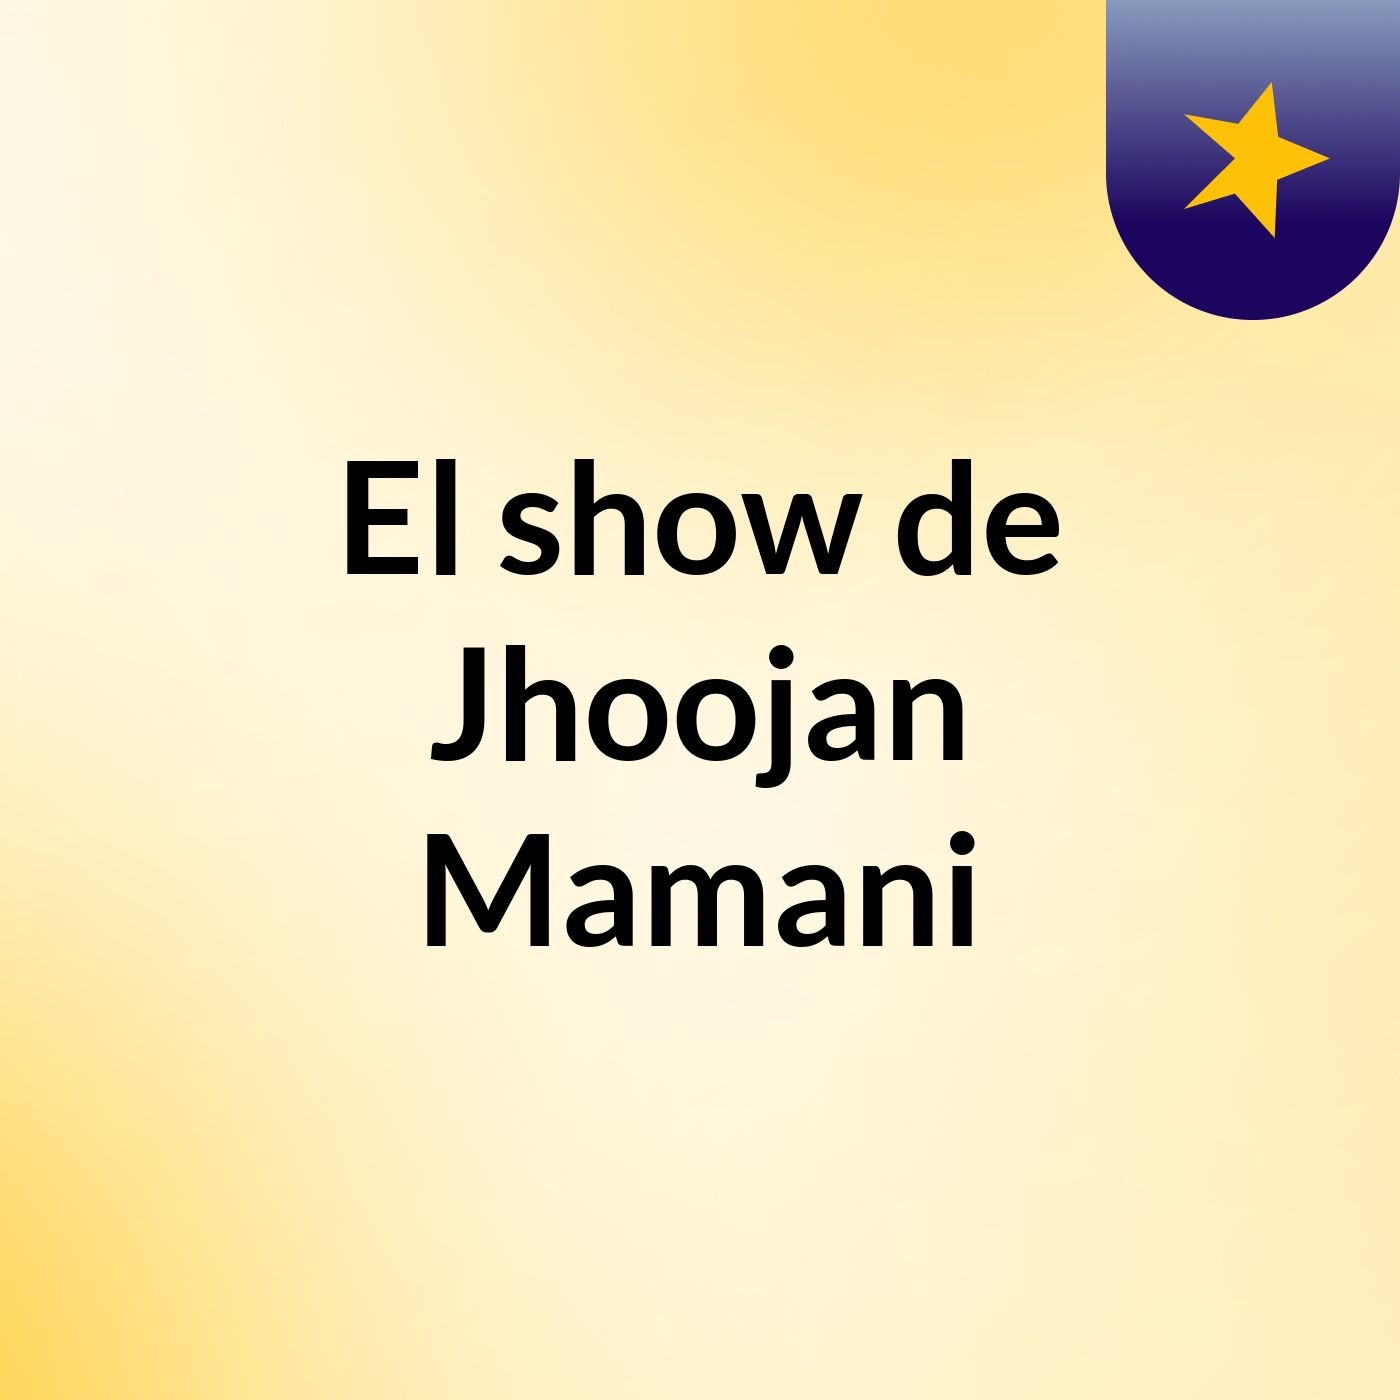 Episodio 2 - El show de Jhoojan Mamani